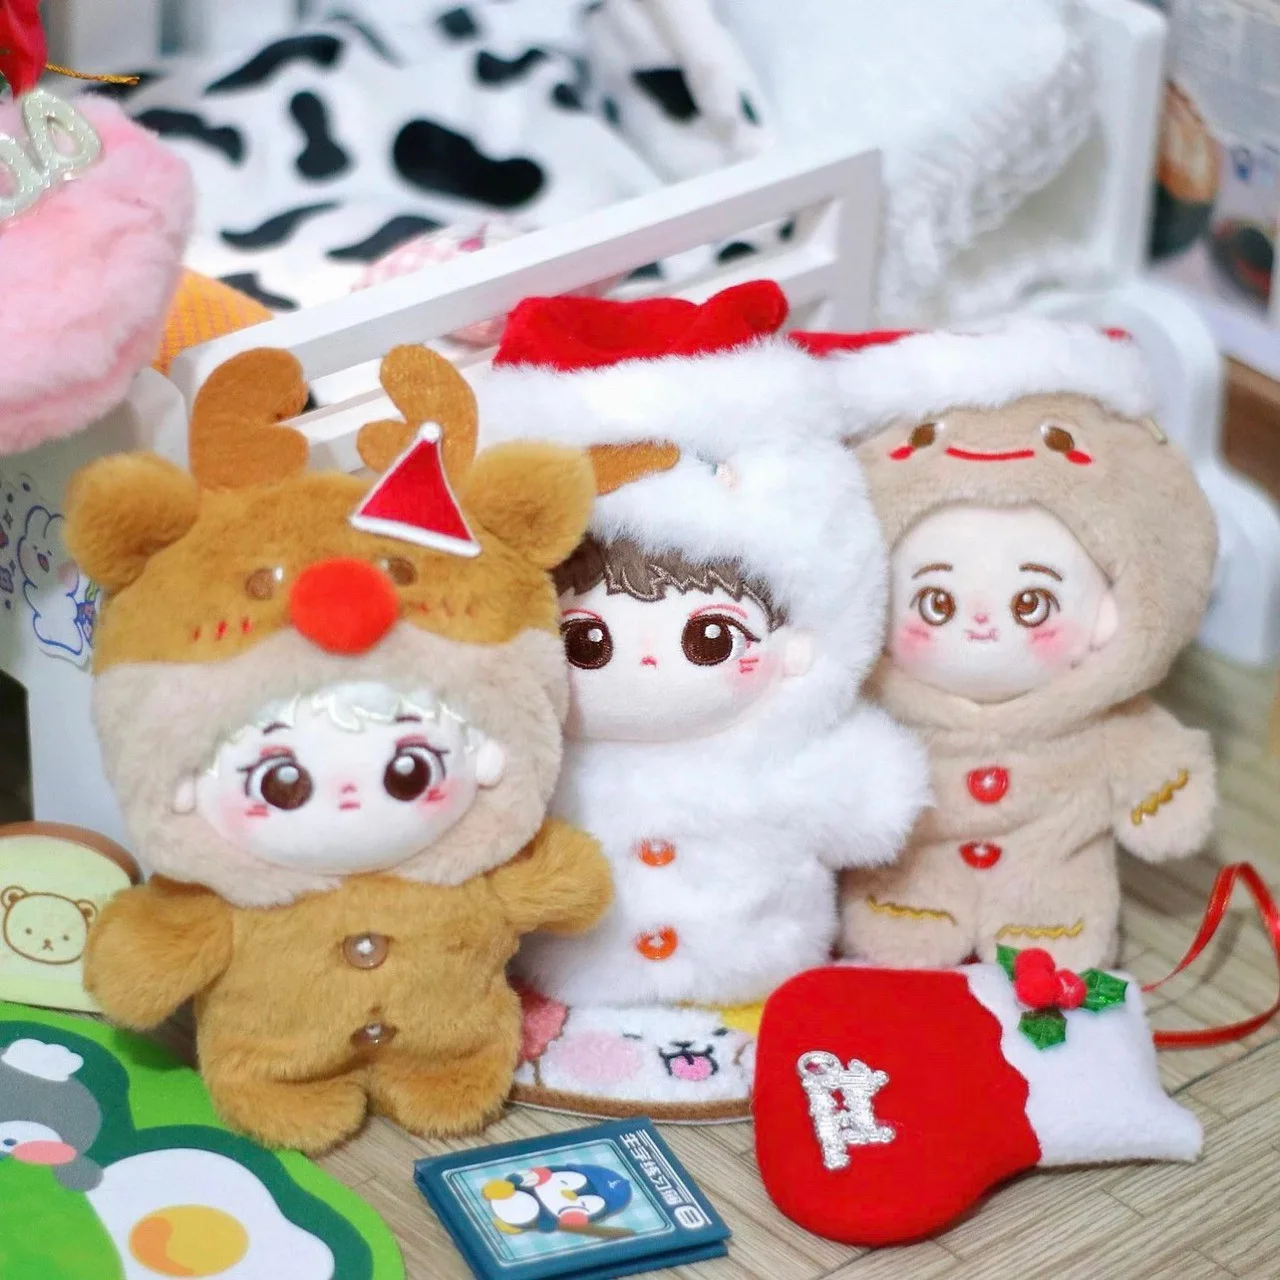 10см Коледа памук кукла дрехи малки снежен човек малко лосове кукла аксесоари красива и деликатна изработка Kawaii неща